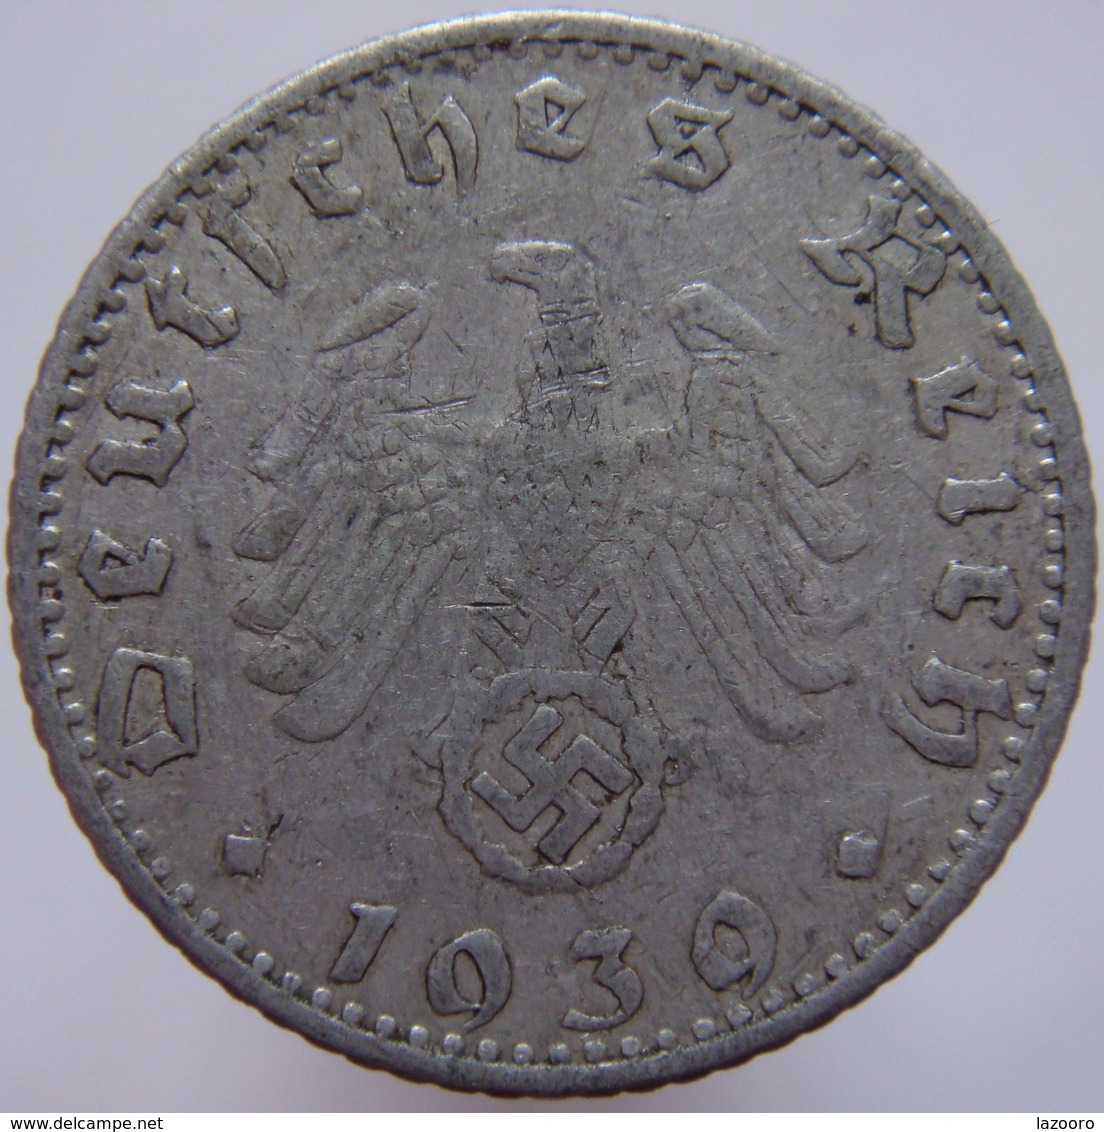 Germany 50 Reichspfennig 1939 E VG/F - 50 Reichspfennig